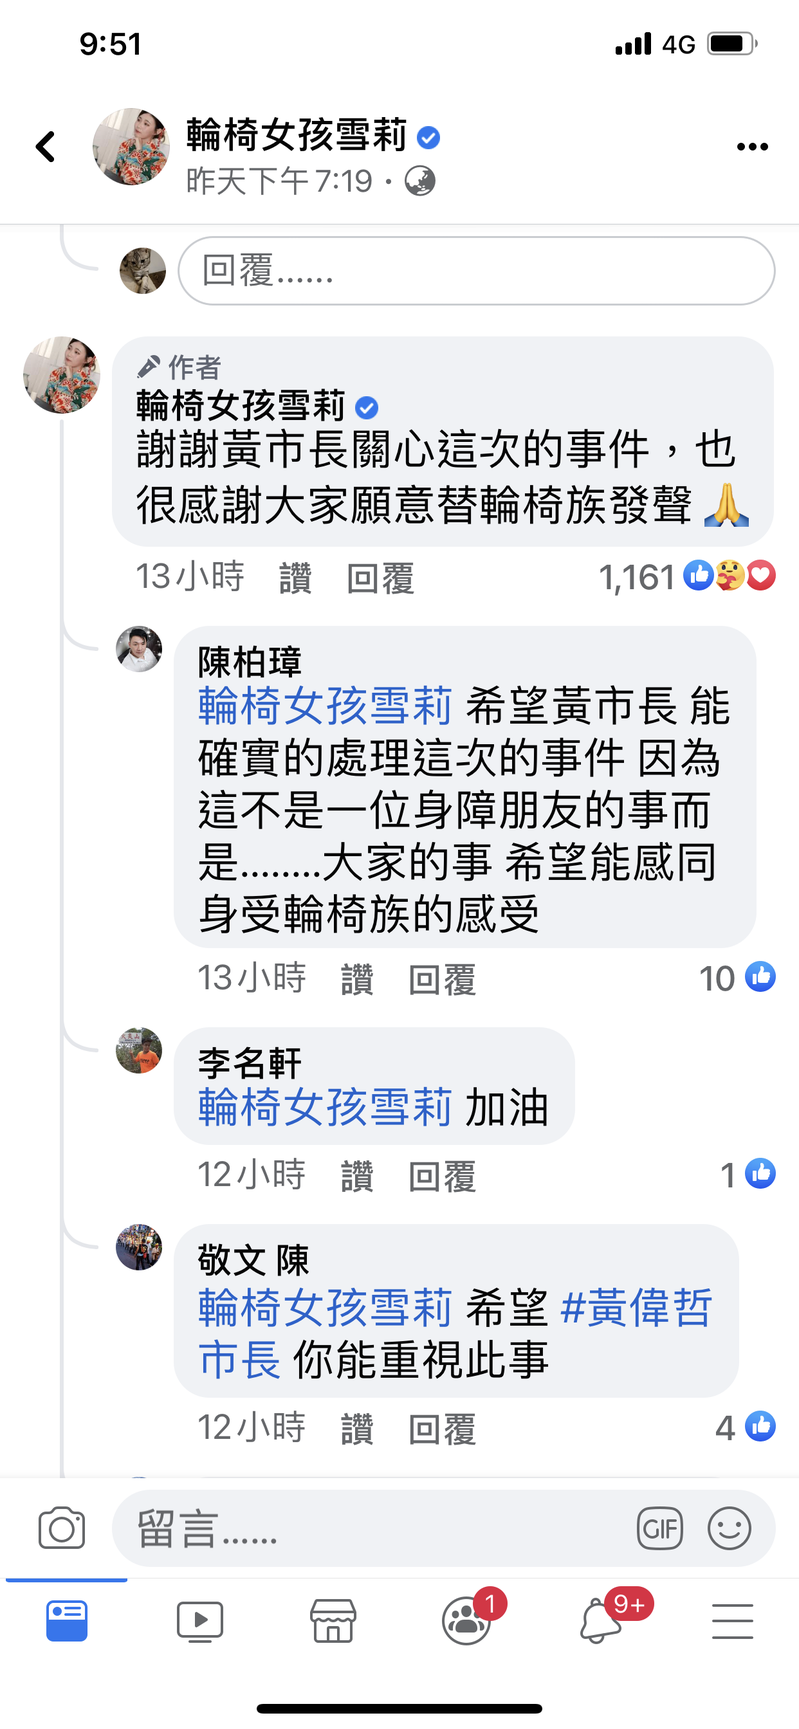 網紅輪椅女孩雪莉在臉書發文指台南市公車司機罵她不會開輪椅。圖／取自臉書